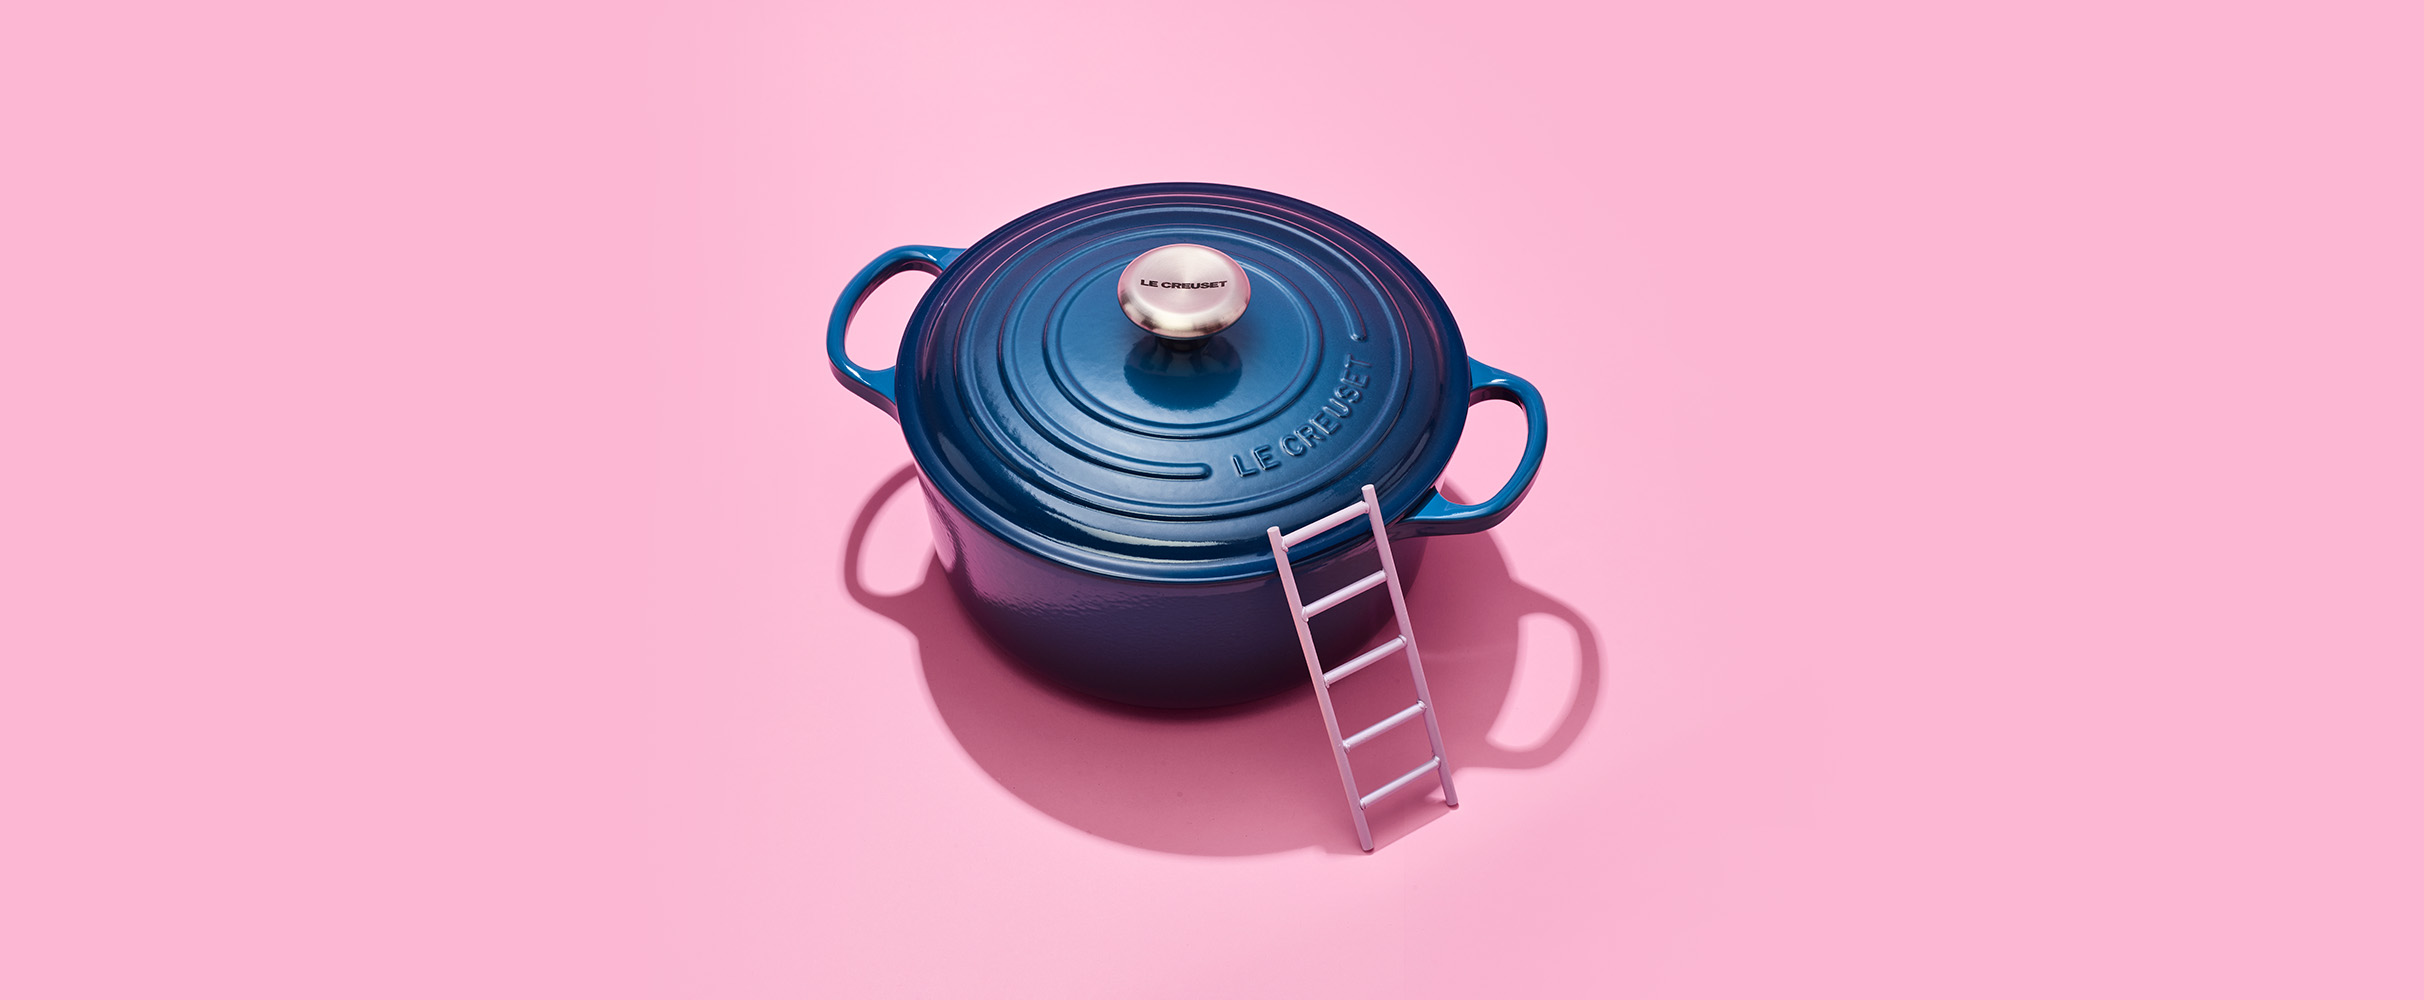 Deze 7 dingen beschadigen je pan (en nee, we hebben het niet over die metalen vork)